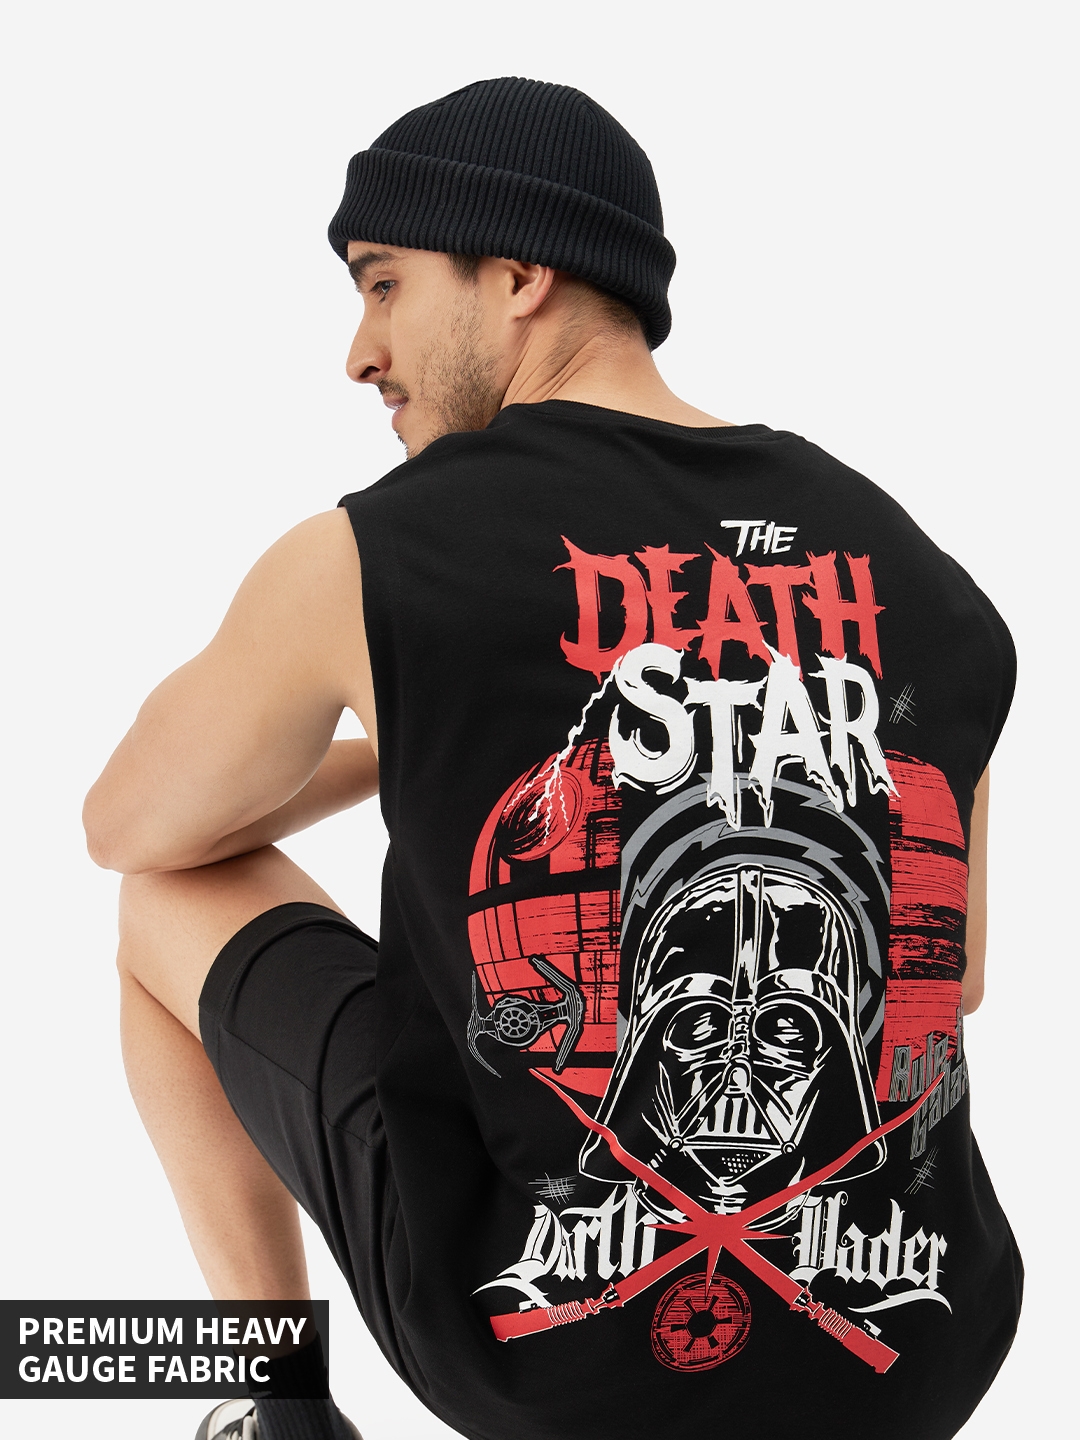 Men's Star Wars: The Death Star Vests